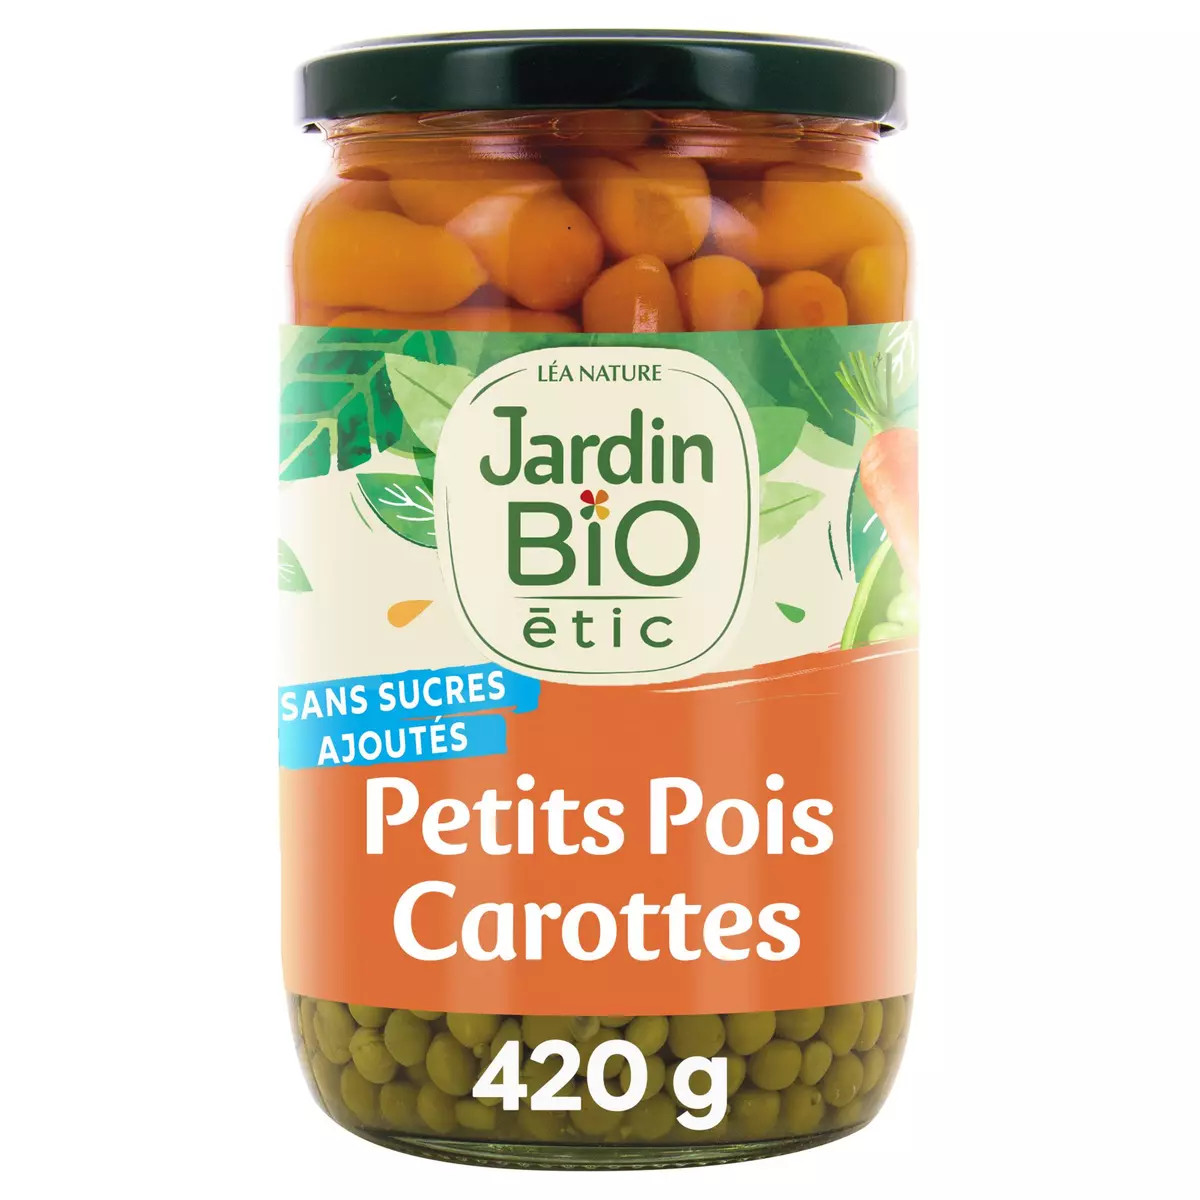 JARDIN BIO ETIC Petits pois très fins et carottes en bocal 420g